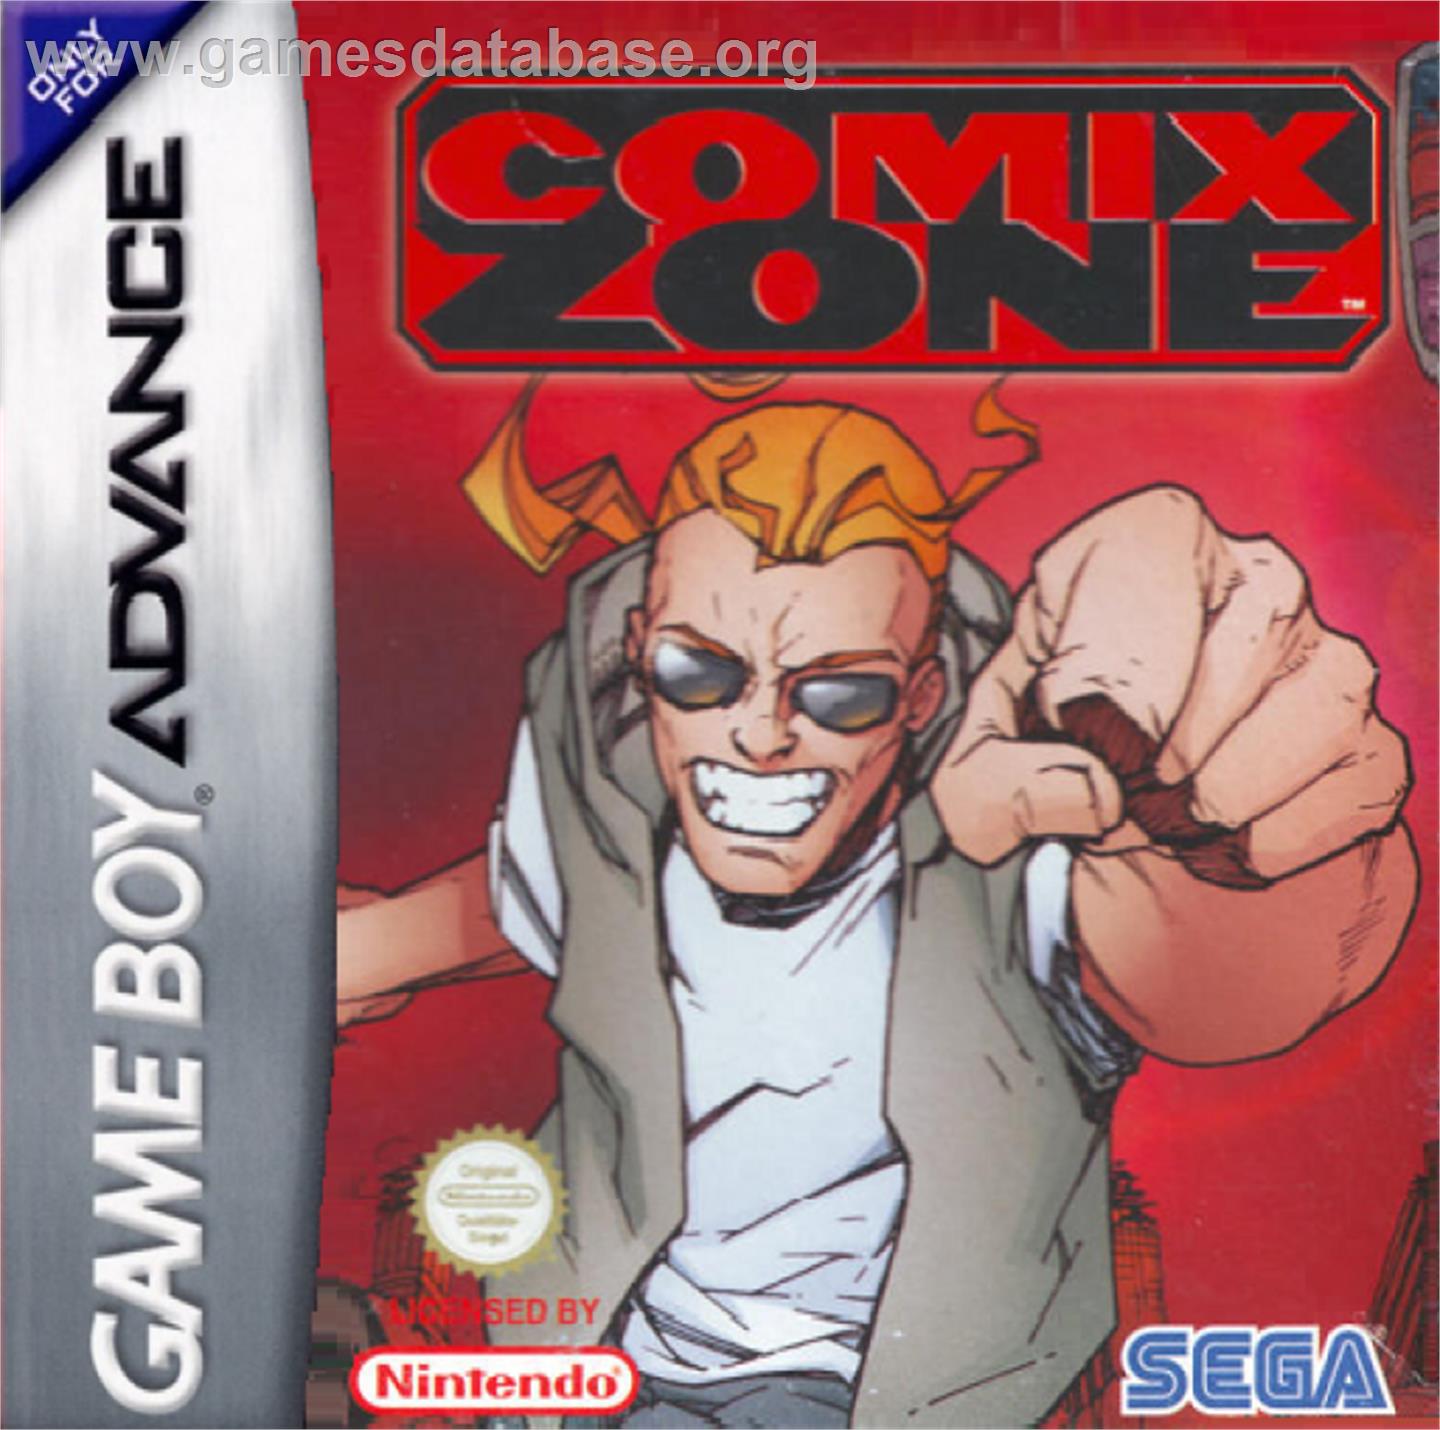 Comix Zone - Nintendo Game Boy Advance - Artwork - Box